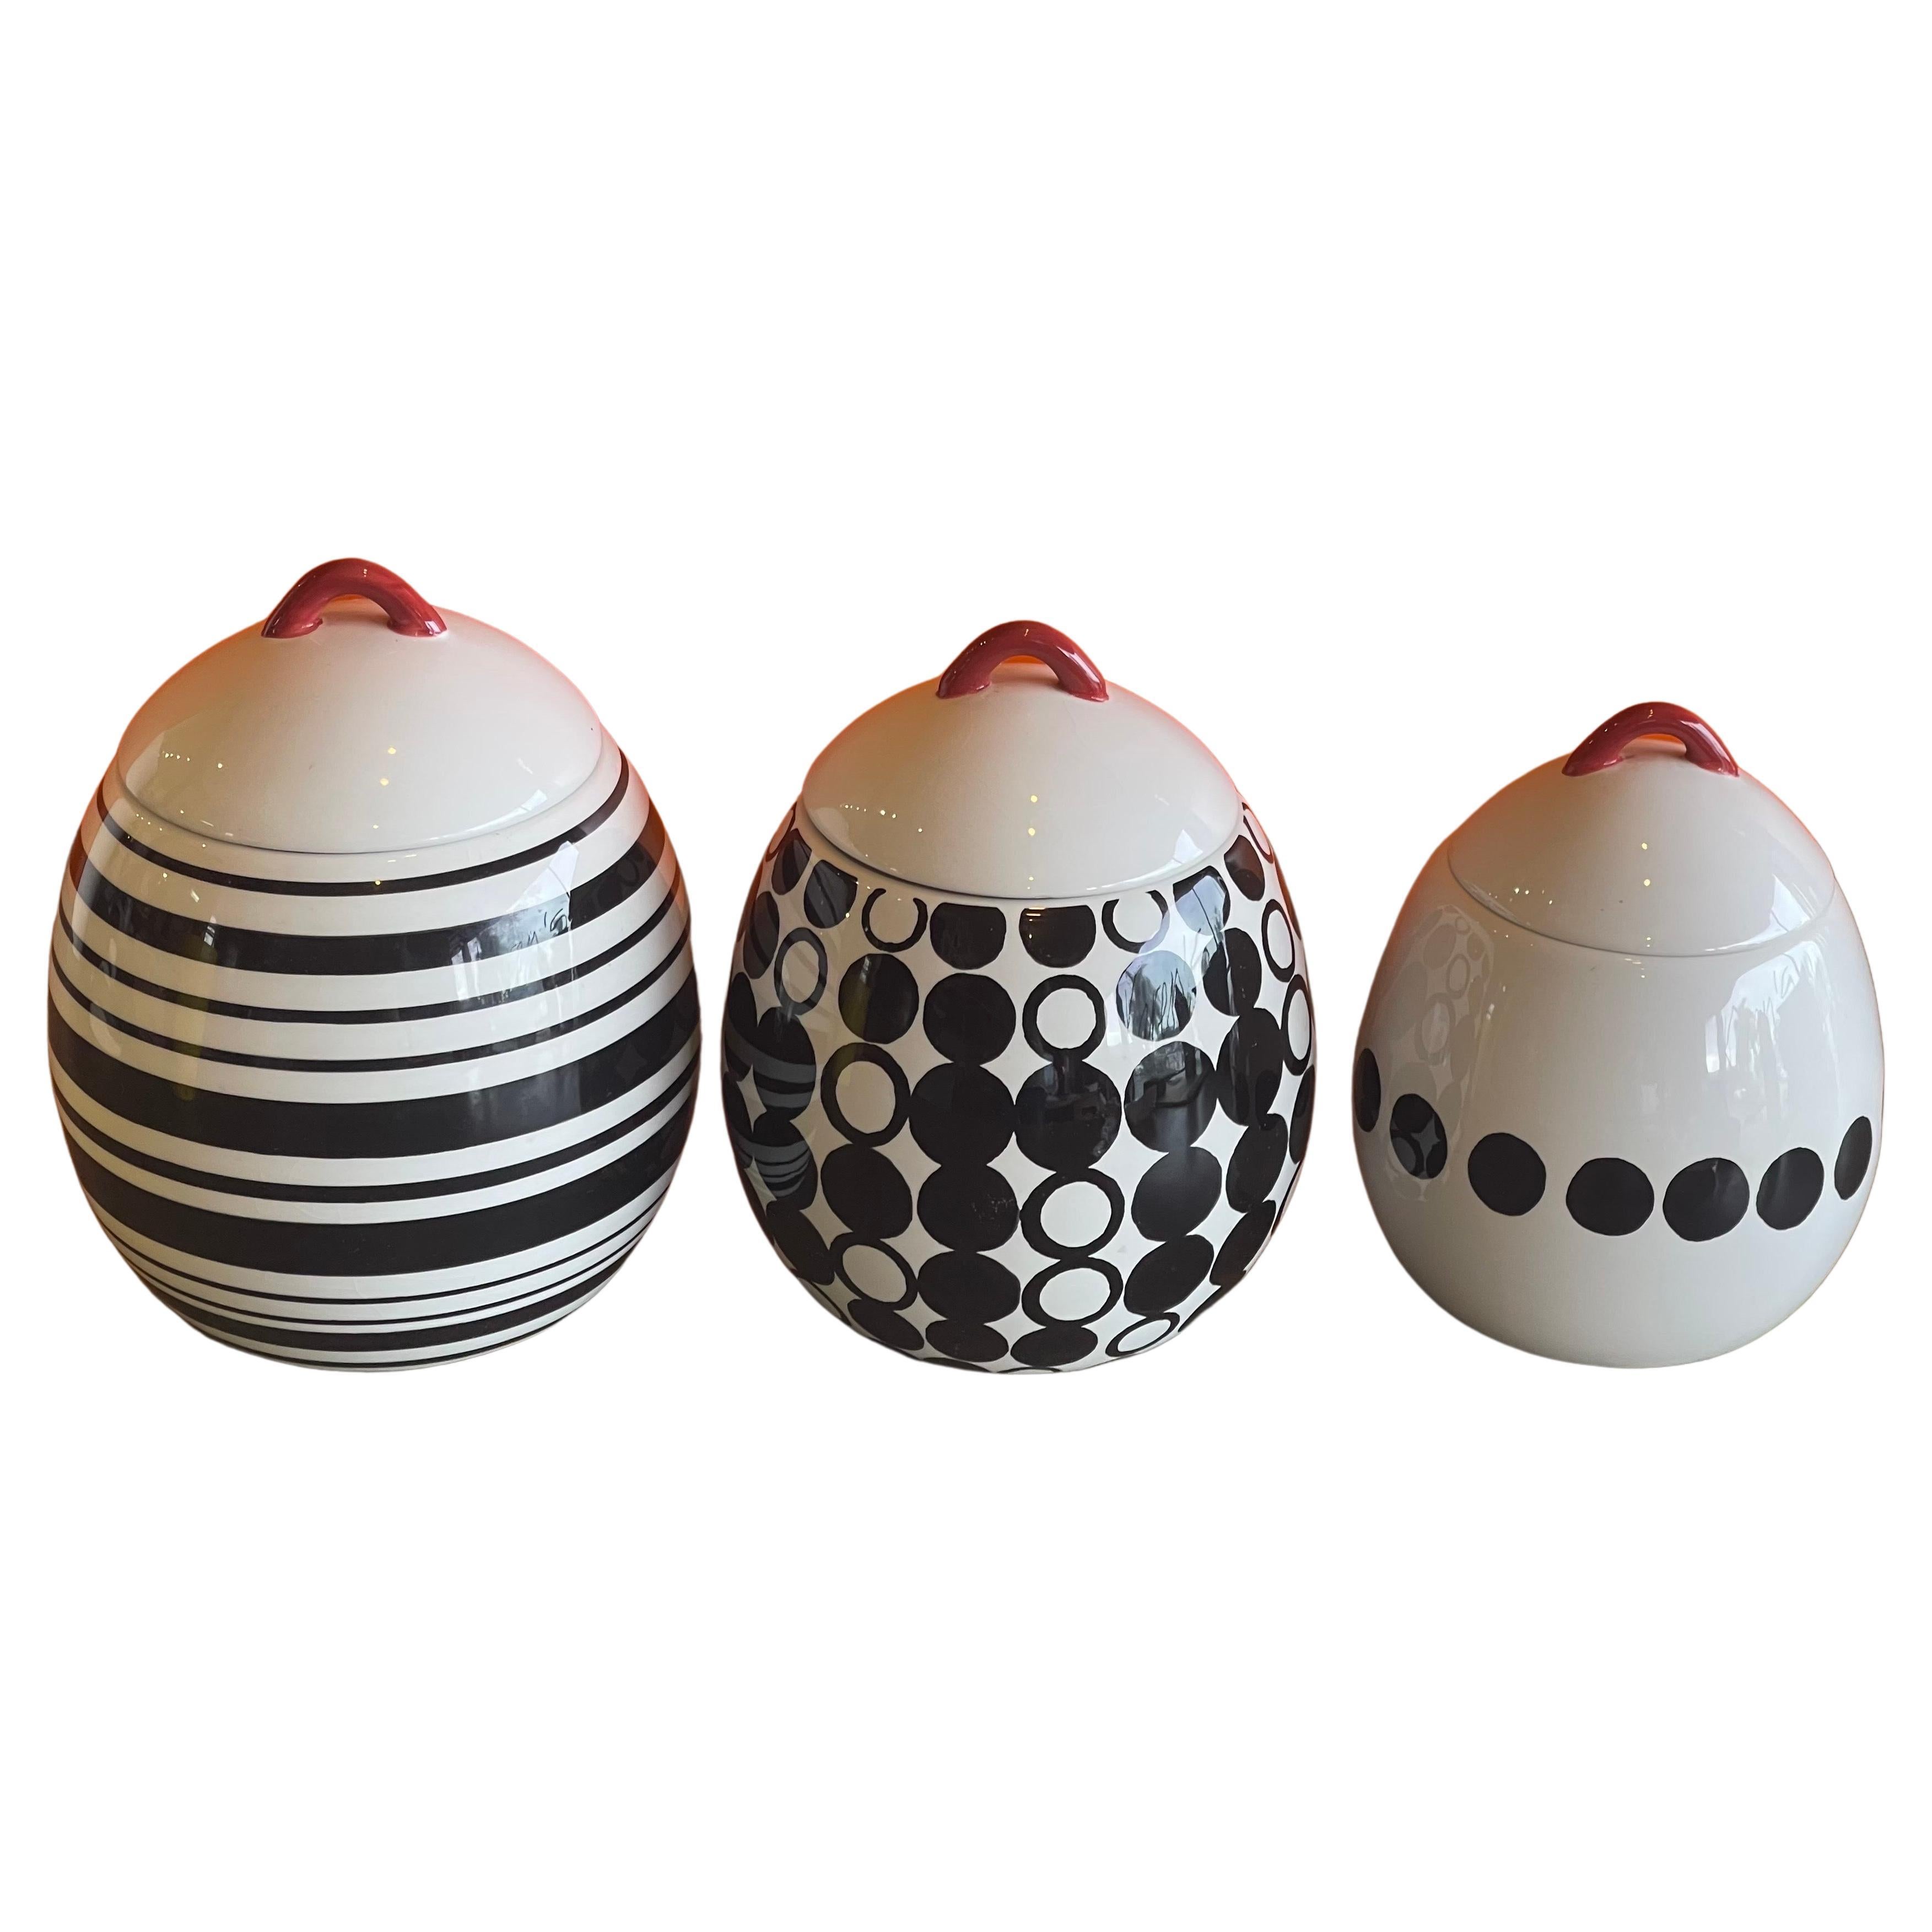 Satz von drei postmodernen Keramikbehältern zur Aufbewahrung, ca. 1990er Jahre. Die Kanister sind eiförmig mit schwarz-weißen geometrischen Mustern und roten Griffen an den abnehmbaren Deckeln. Das Set ist in gutem Vintage-Zustand und die Kanister